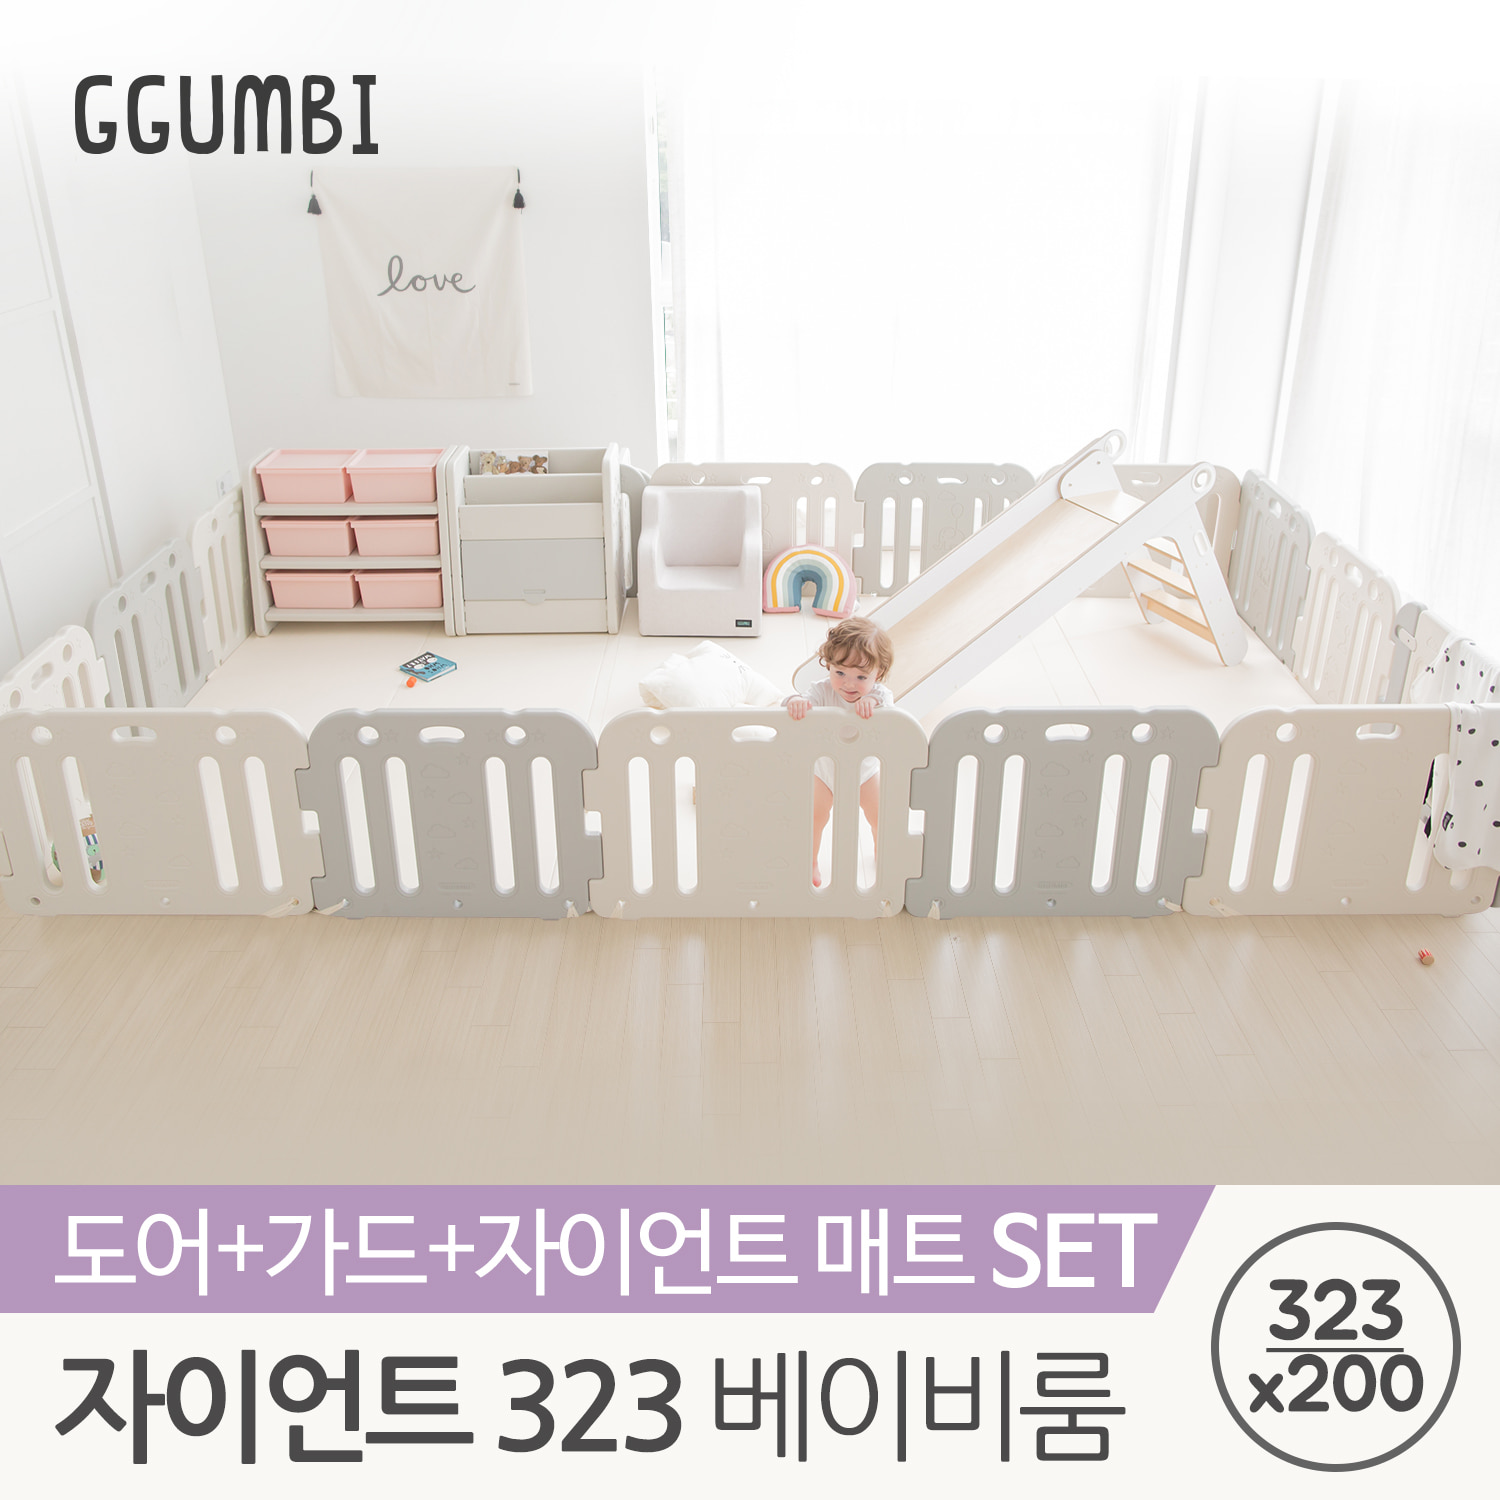 [꿈비] 단독특가★ 323x200 자이언트 플러스 베이비룸 세트 (놀이방매트+가드 16p)